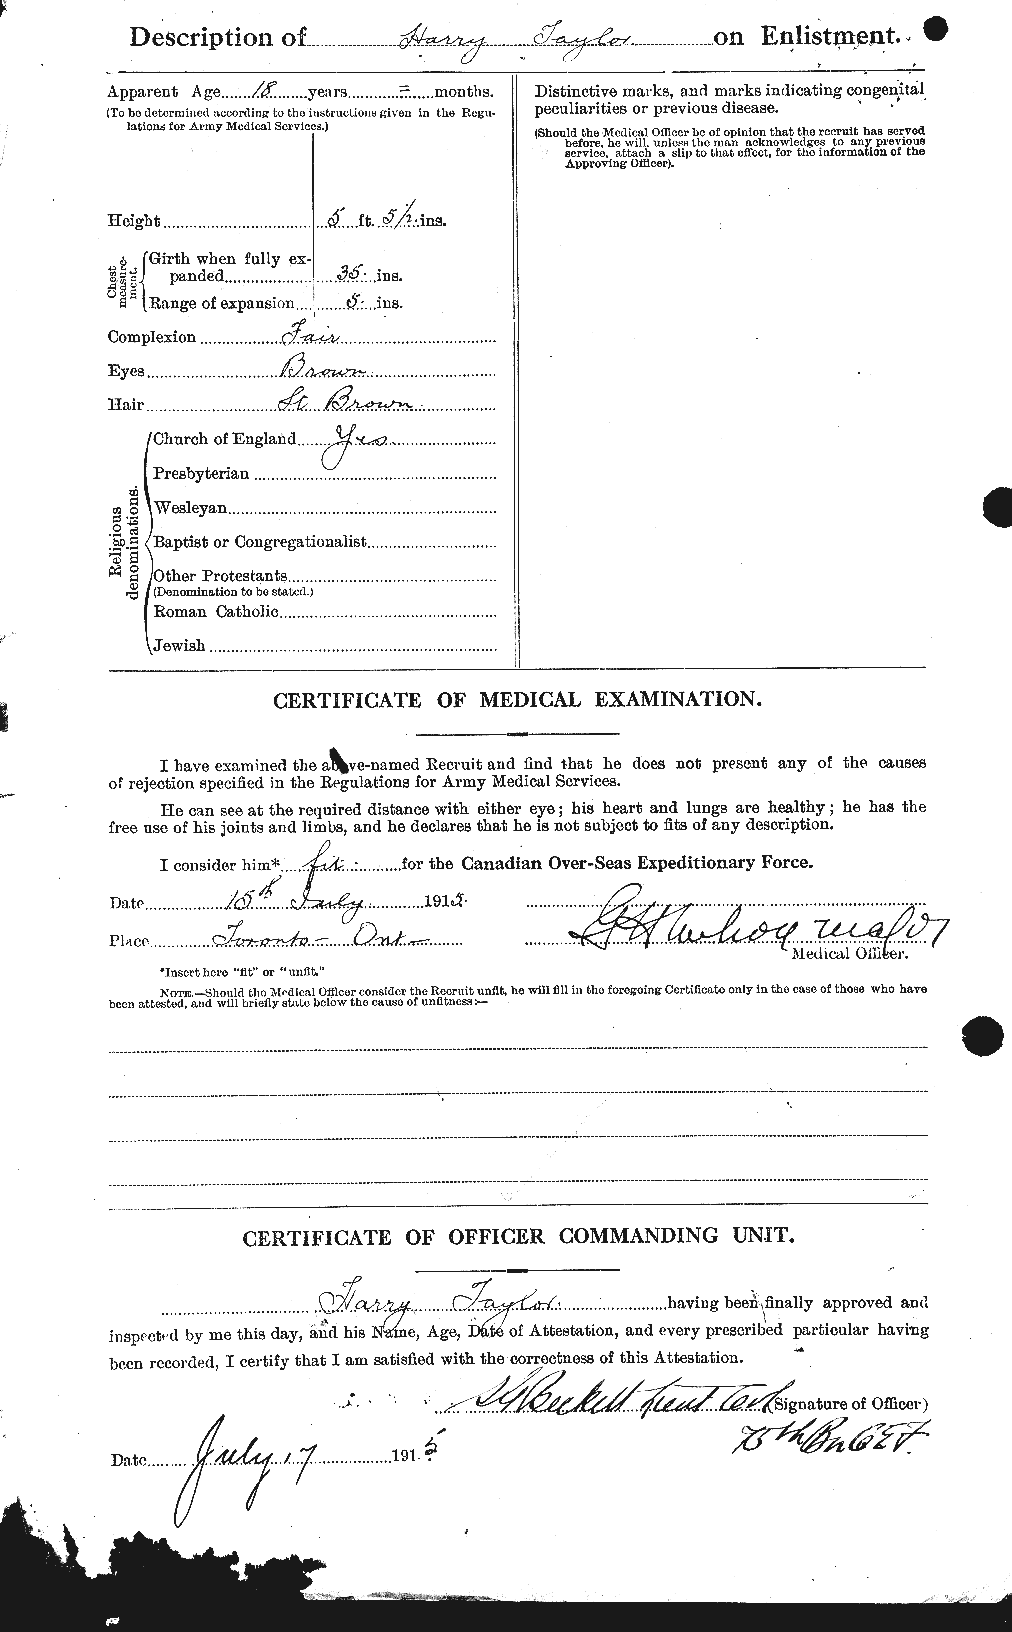 Dossiers du Personnel de la Première Guerre mondiale - CEC 626468b